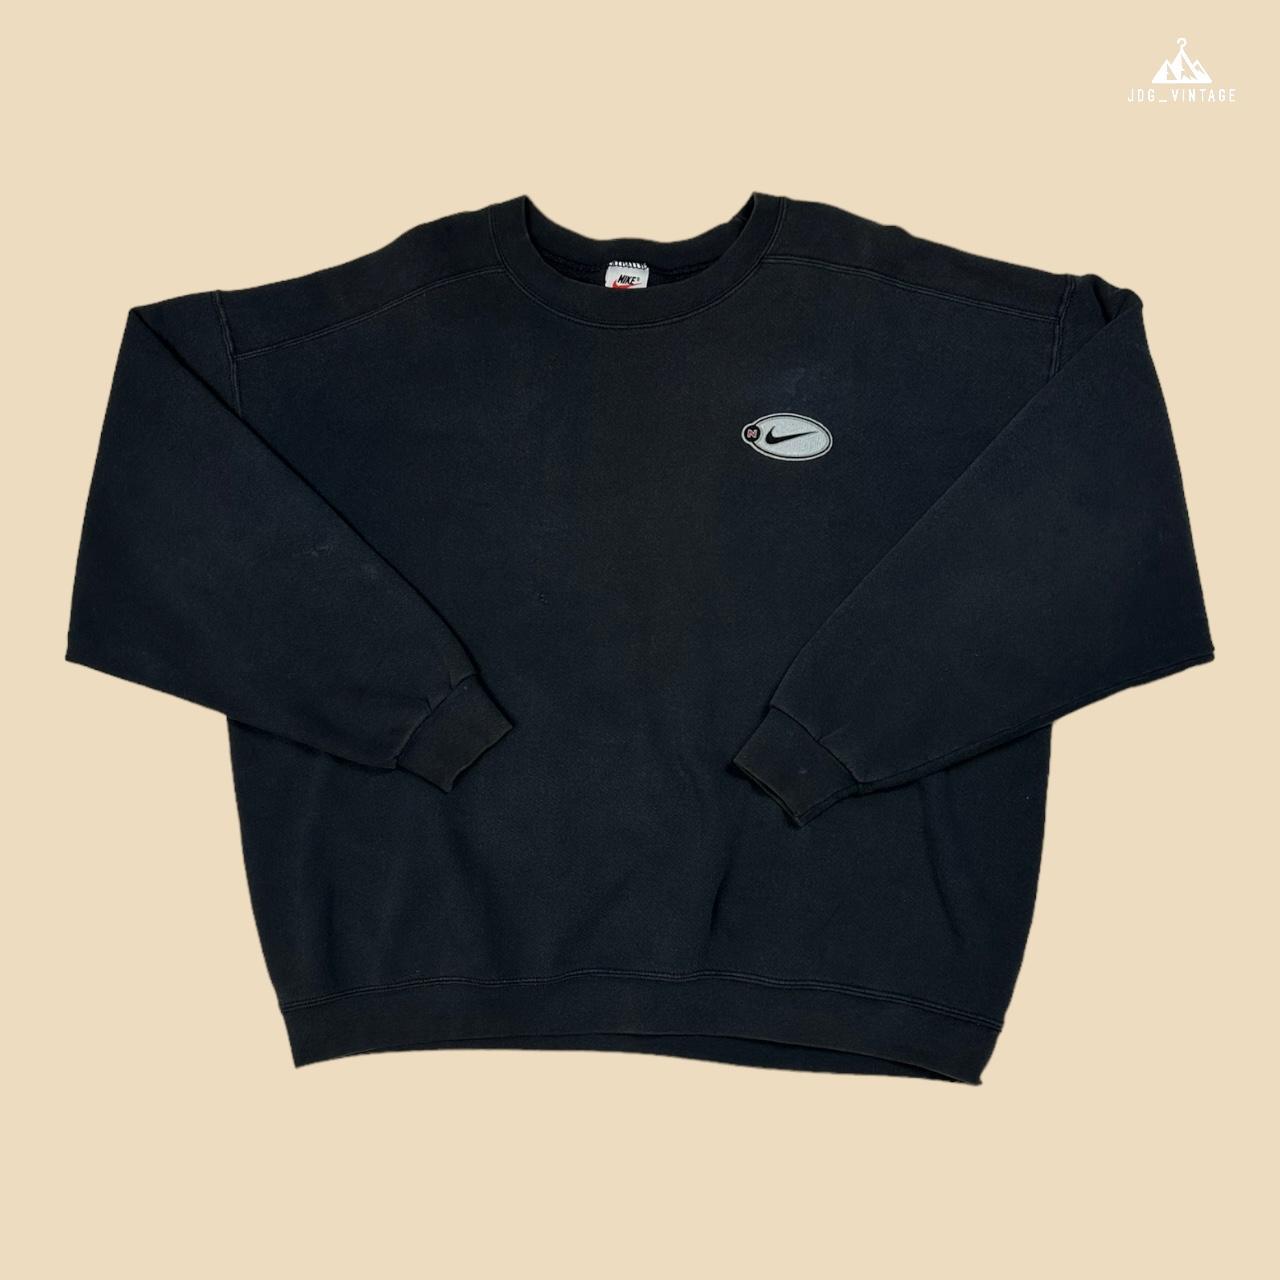 Nike Men's Black Sweatshirt | Depop